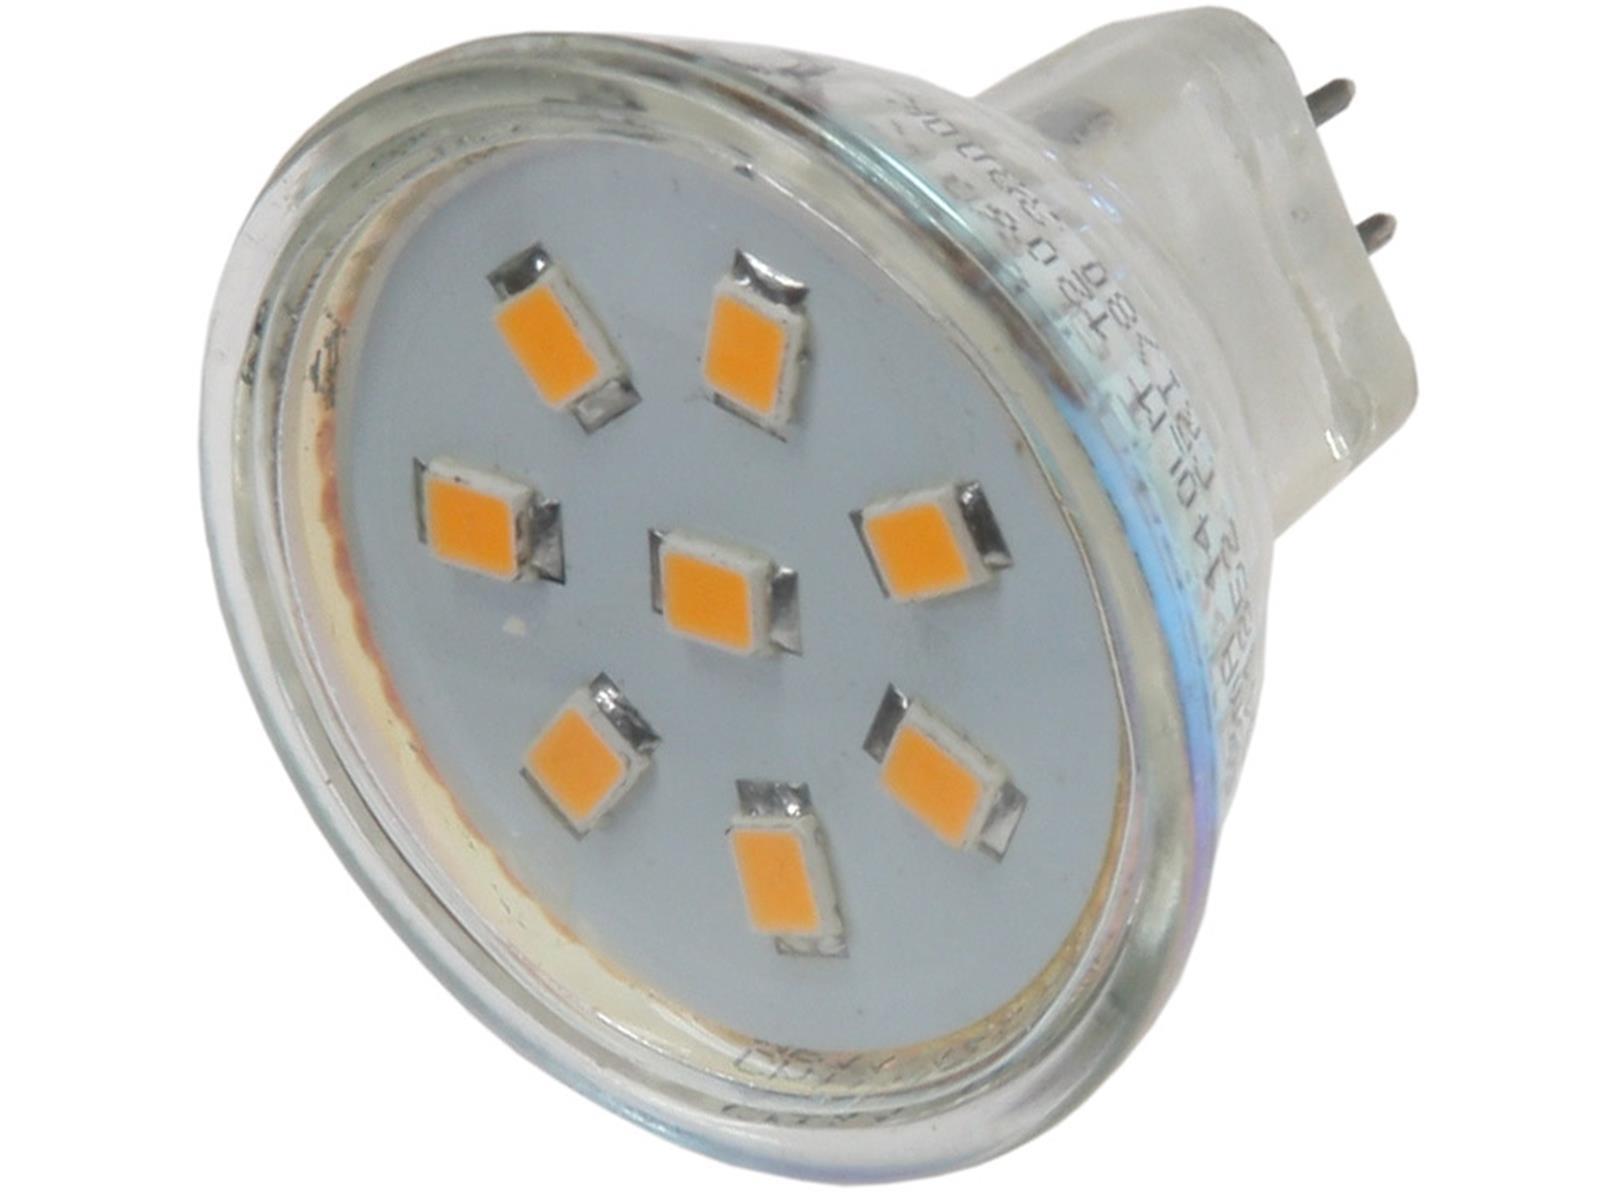 LED Strahler MR11, 8x 2835 SMD LEDs12V, 2W, 140 Lumen, 3000k / warmweiß